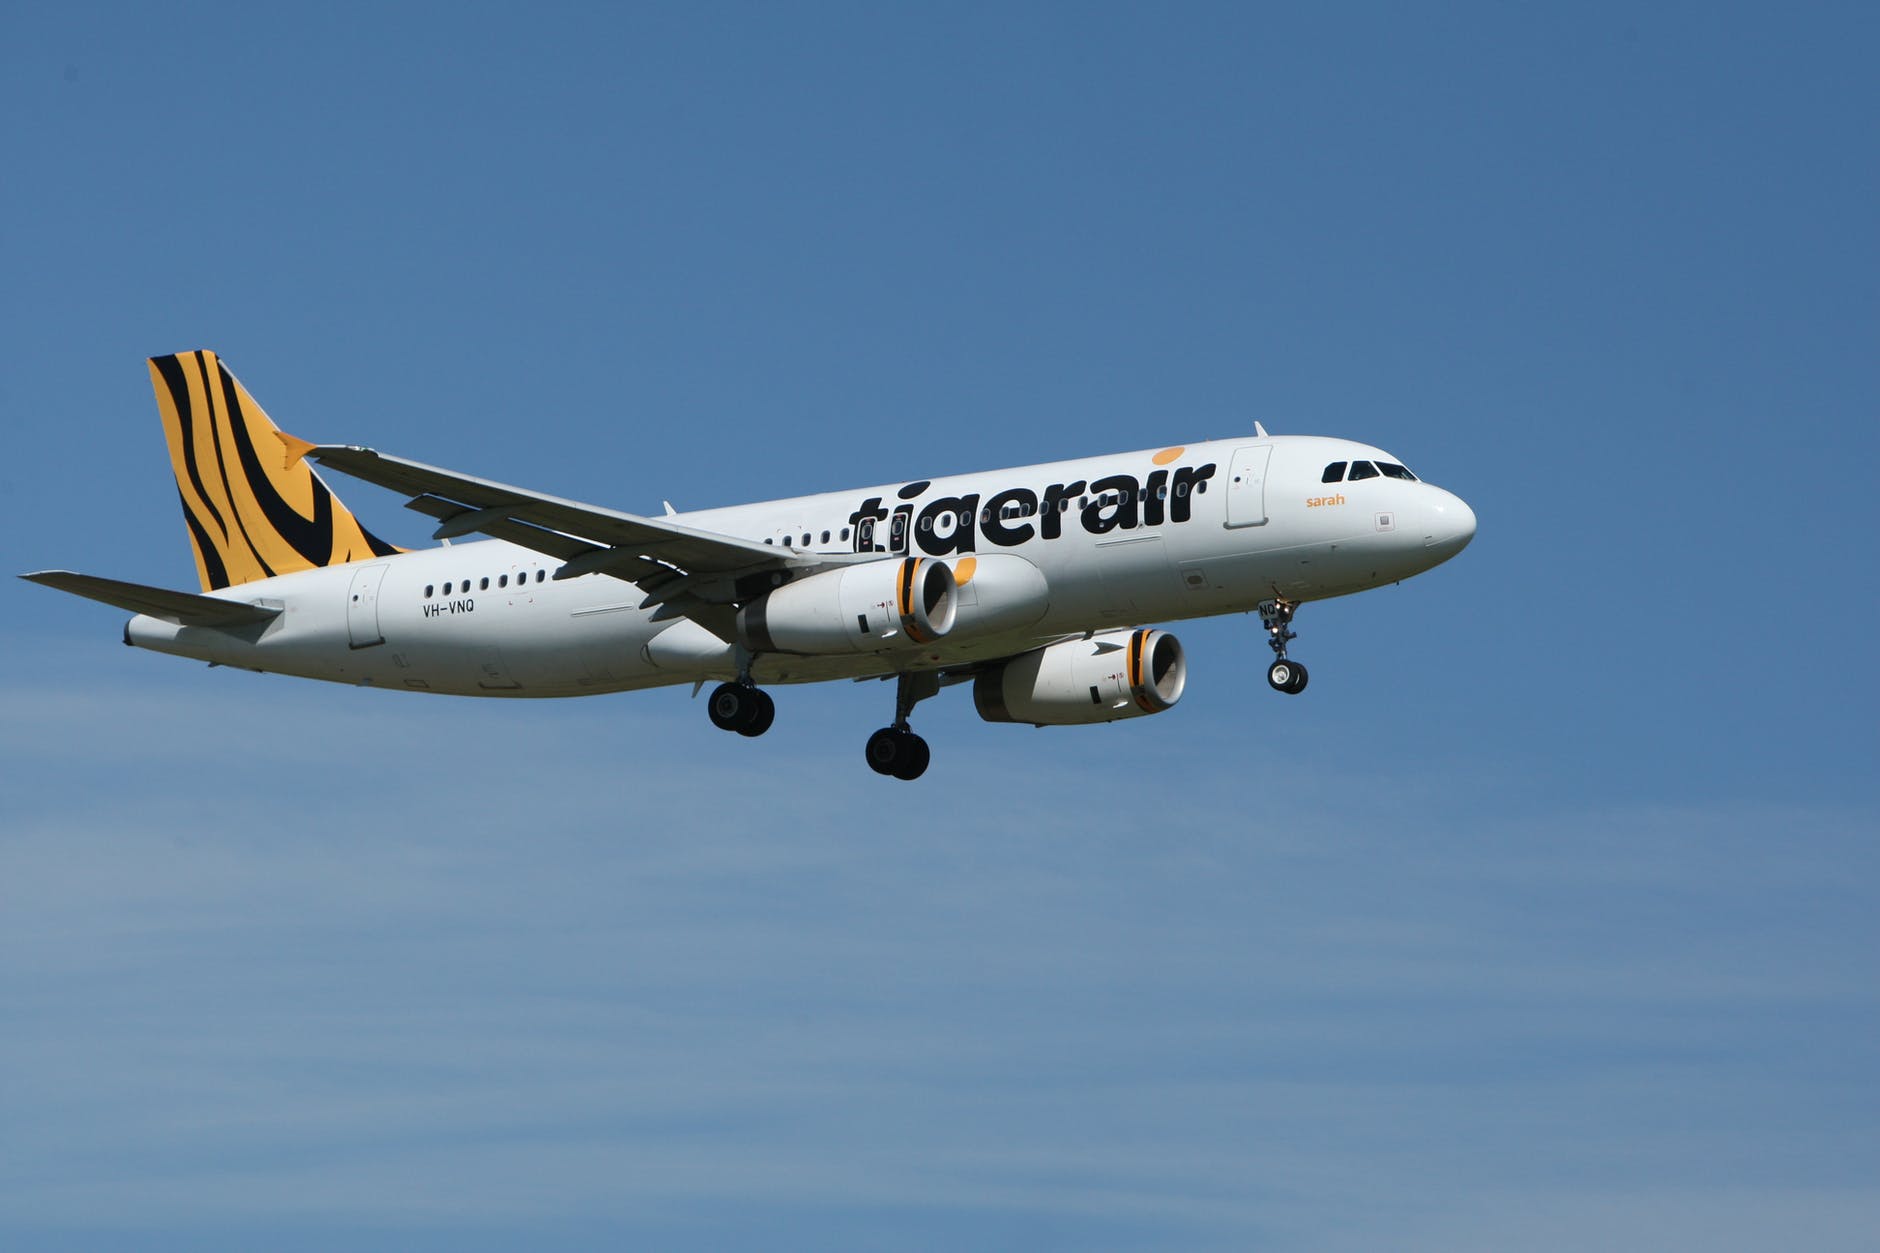 tigerair airplane taken